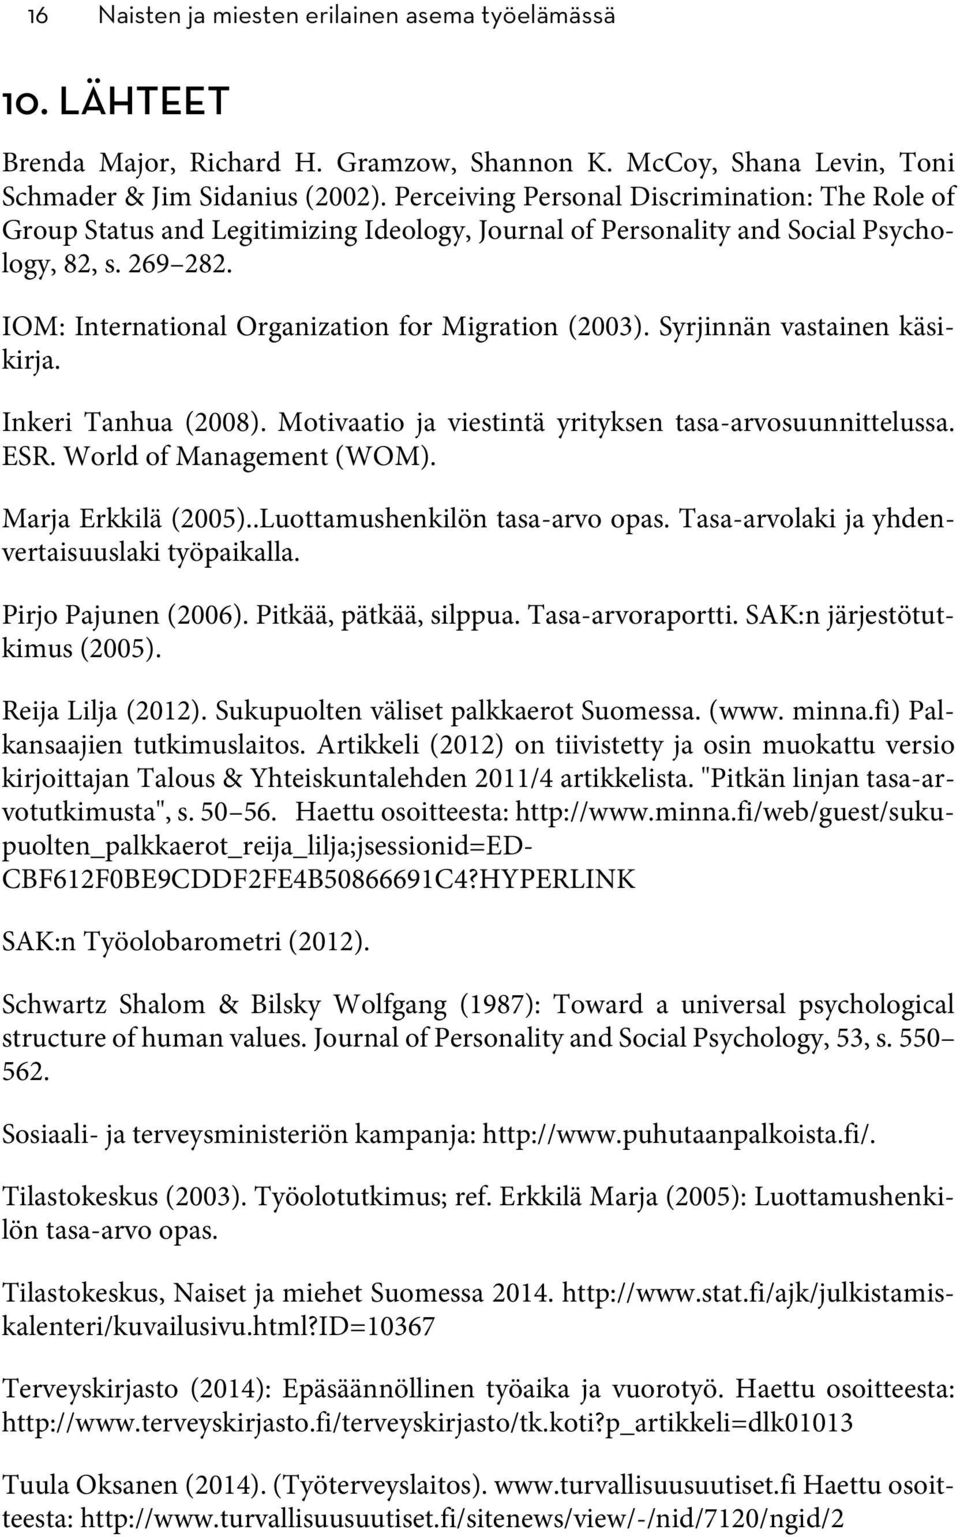 IOM: International Organization for Migration (2003). Syrjinnän vastainen käsikirja. Inkeri Tanhua (2008). Motivaatio ja viestintä yrityksen tasa-arvosuunnittelussa. ESR. World of Management (WOM).